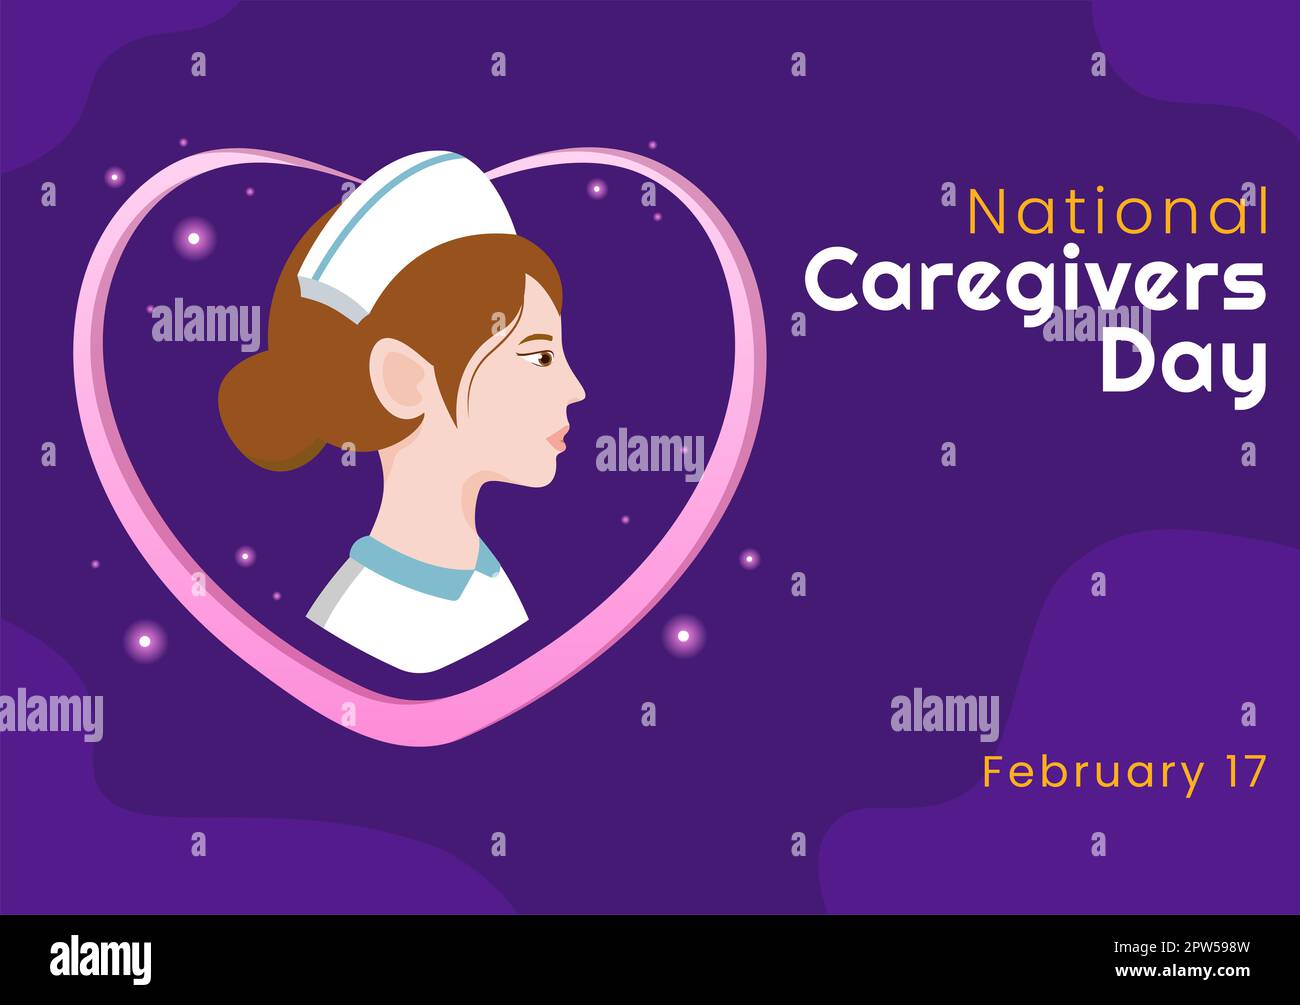 National Caregivers Day am 17.. Februar bietet selbstlose Körperpflege und körperliche Unterstützung in einer flachen, handgezogenen Karikatur Stockfoto